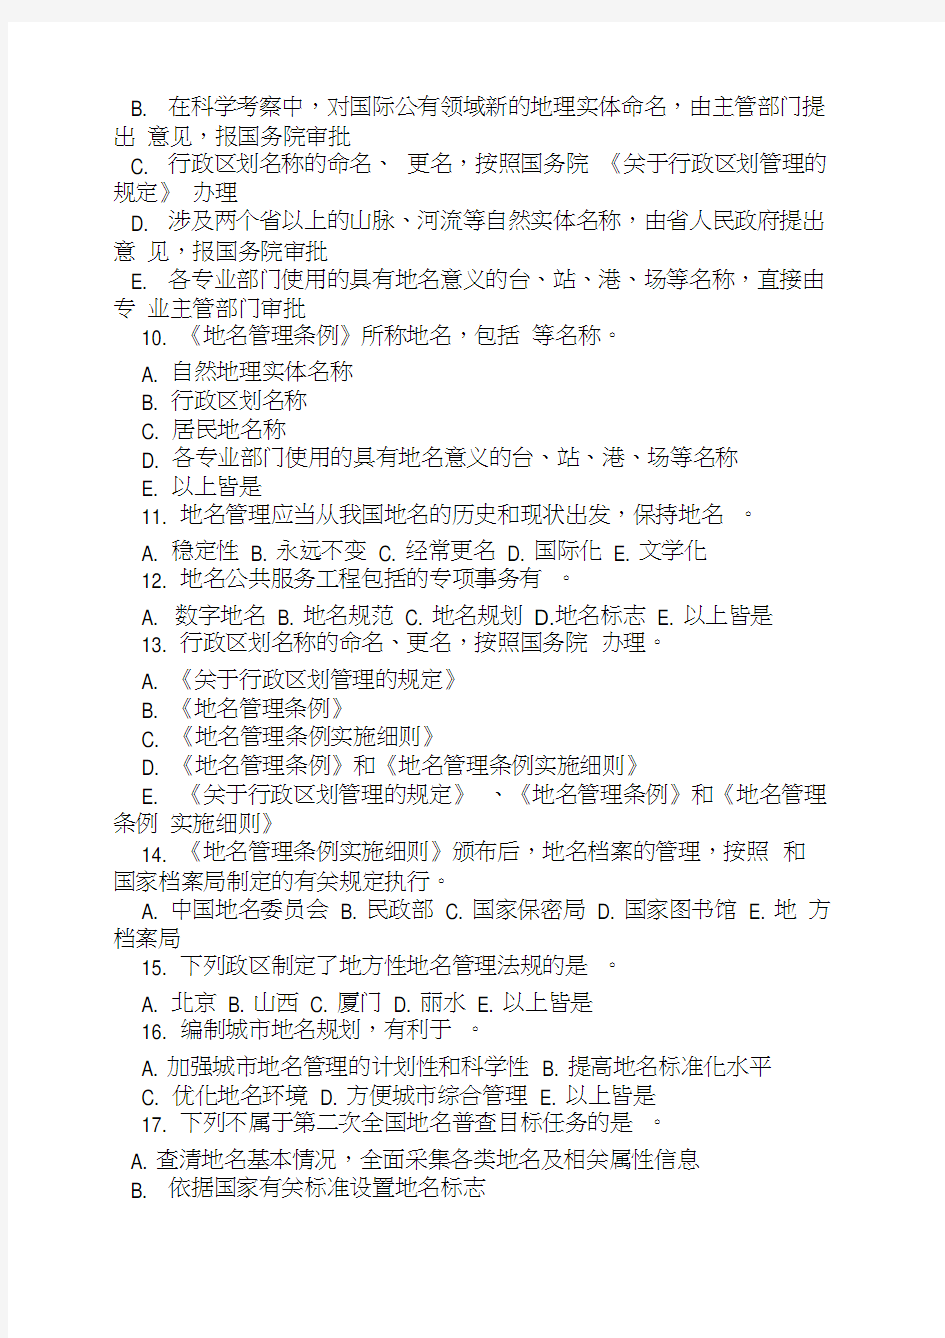 地名知识竞答试题100道-中华人民共和国民政部